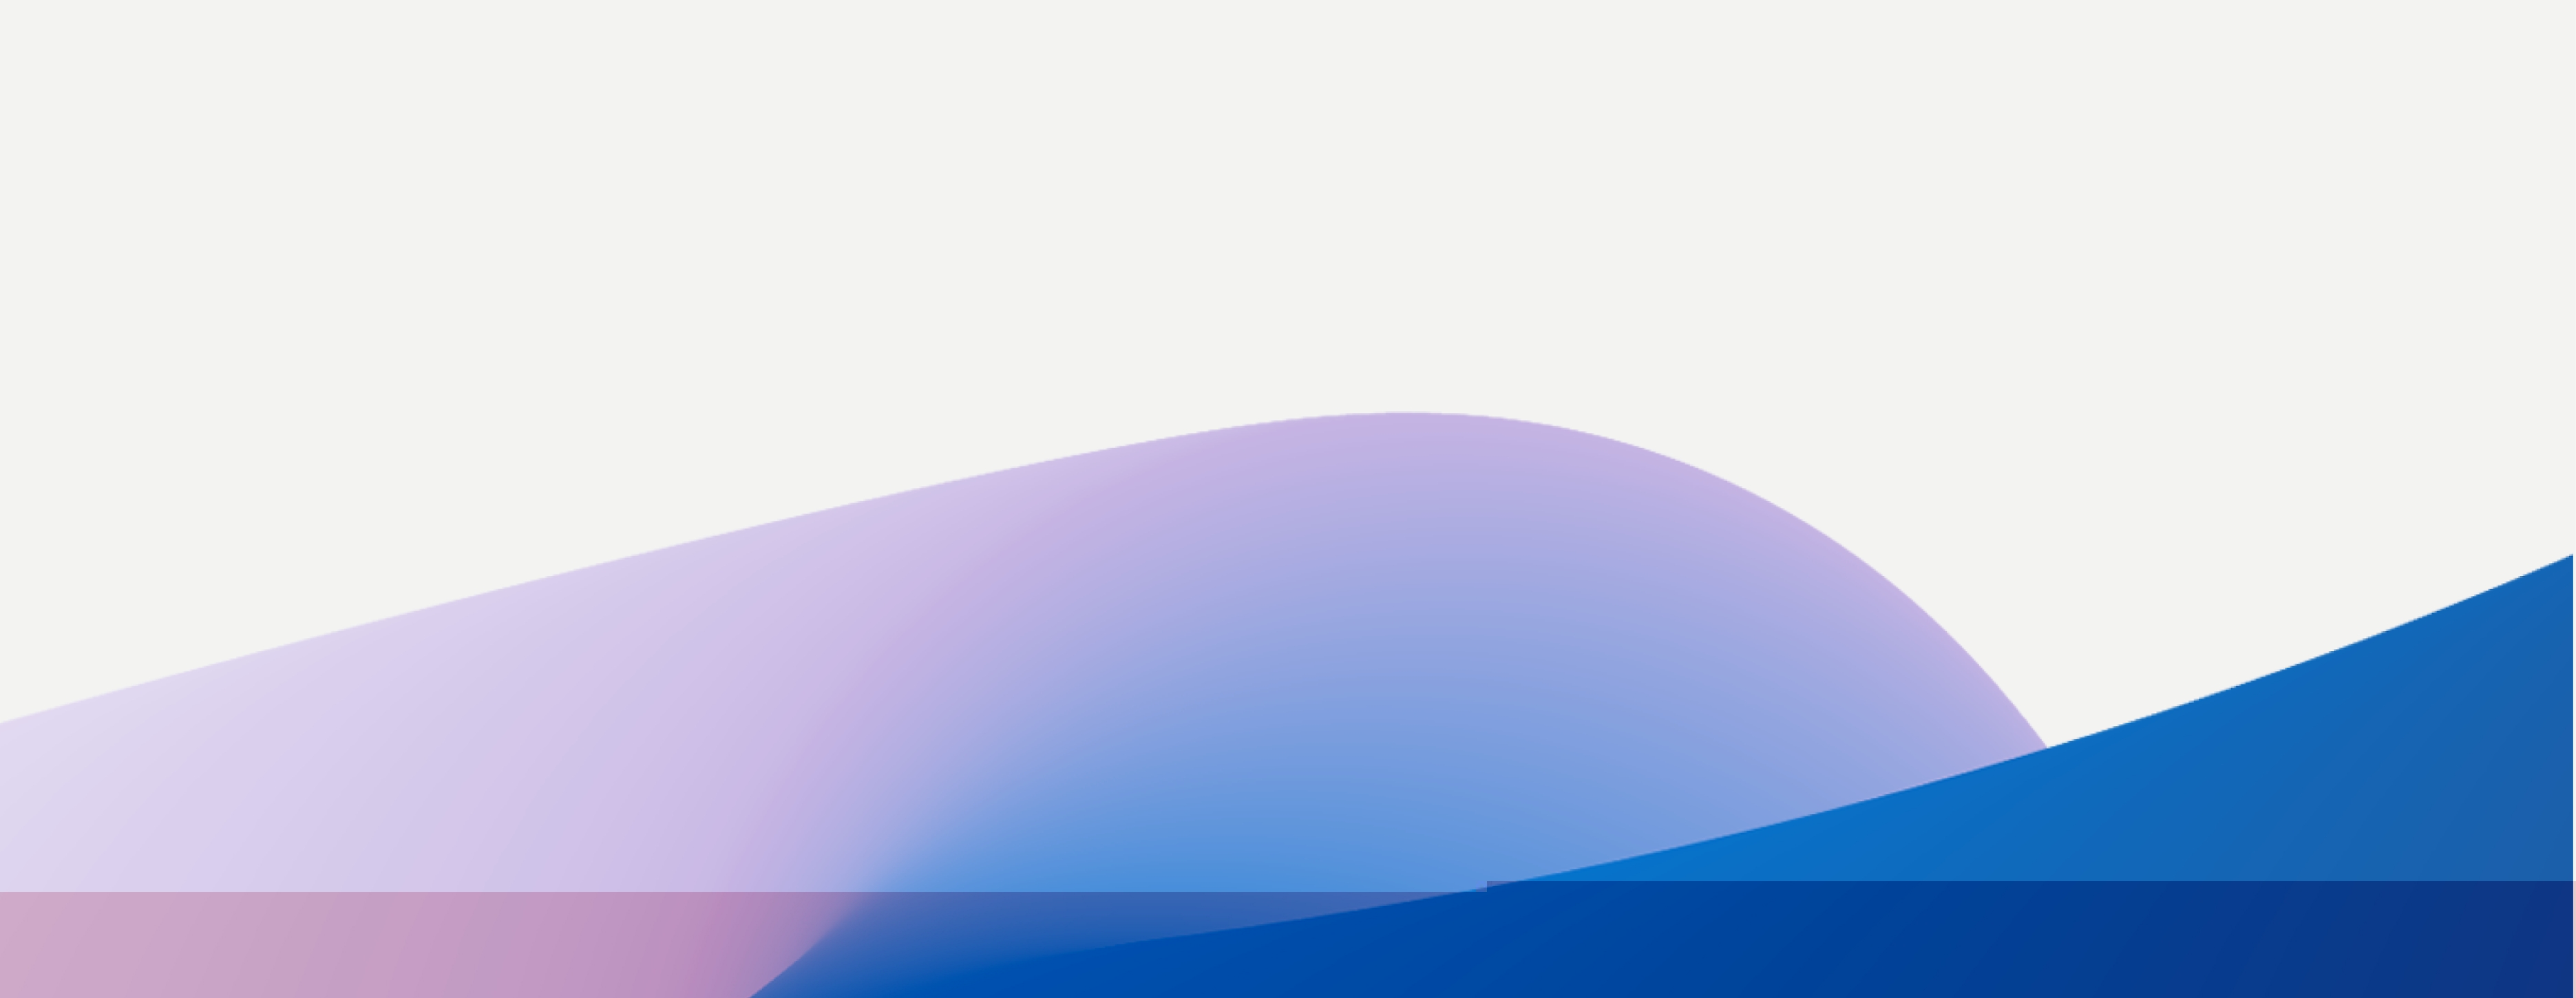 Abstracte achtergrond met vloeiende golven in blauwe en paarse tinten met een witte bovenlaag met kleurovergang.